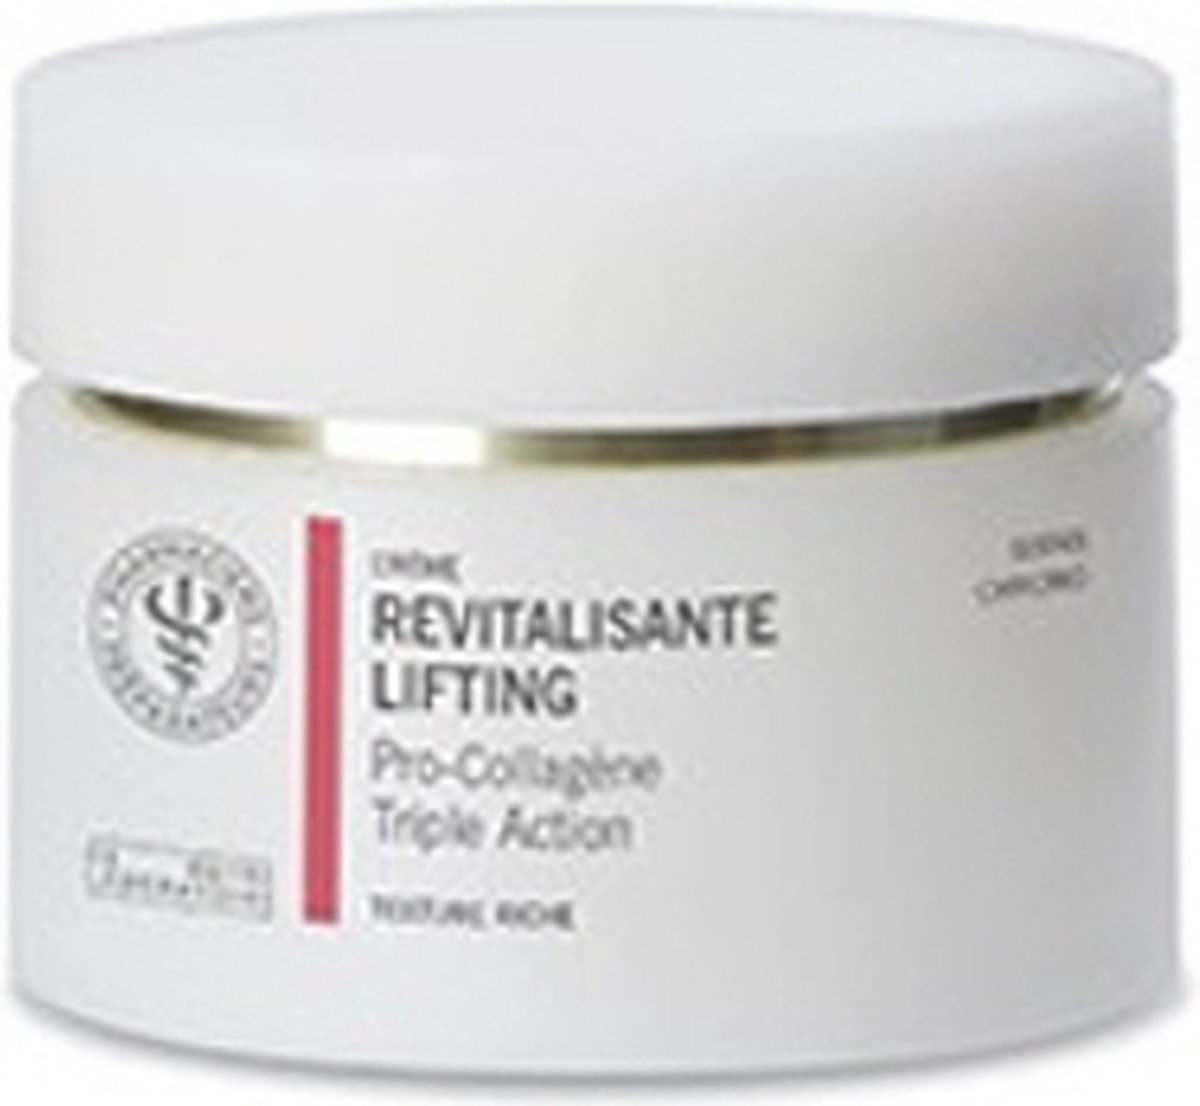 Revitaliserende Lifting Cream - Pro-Collageen en Drievoudige Actie - Rijke Textuur - 50 ml